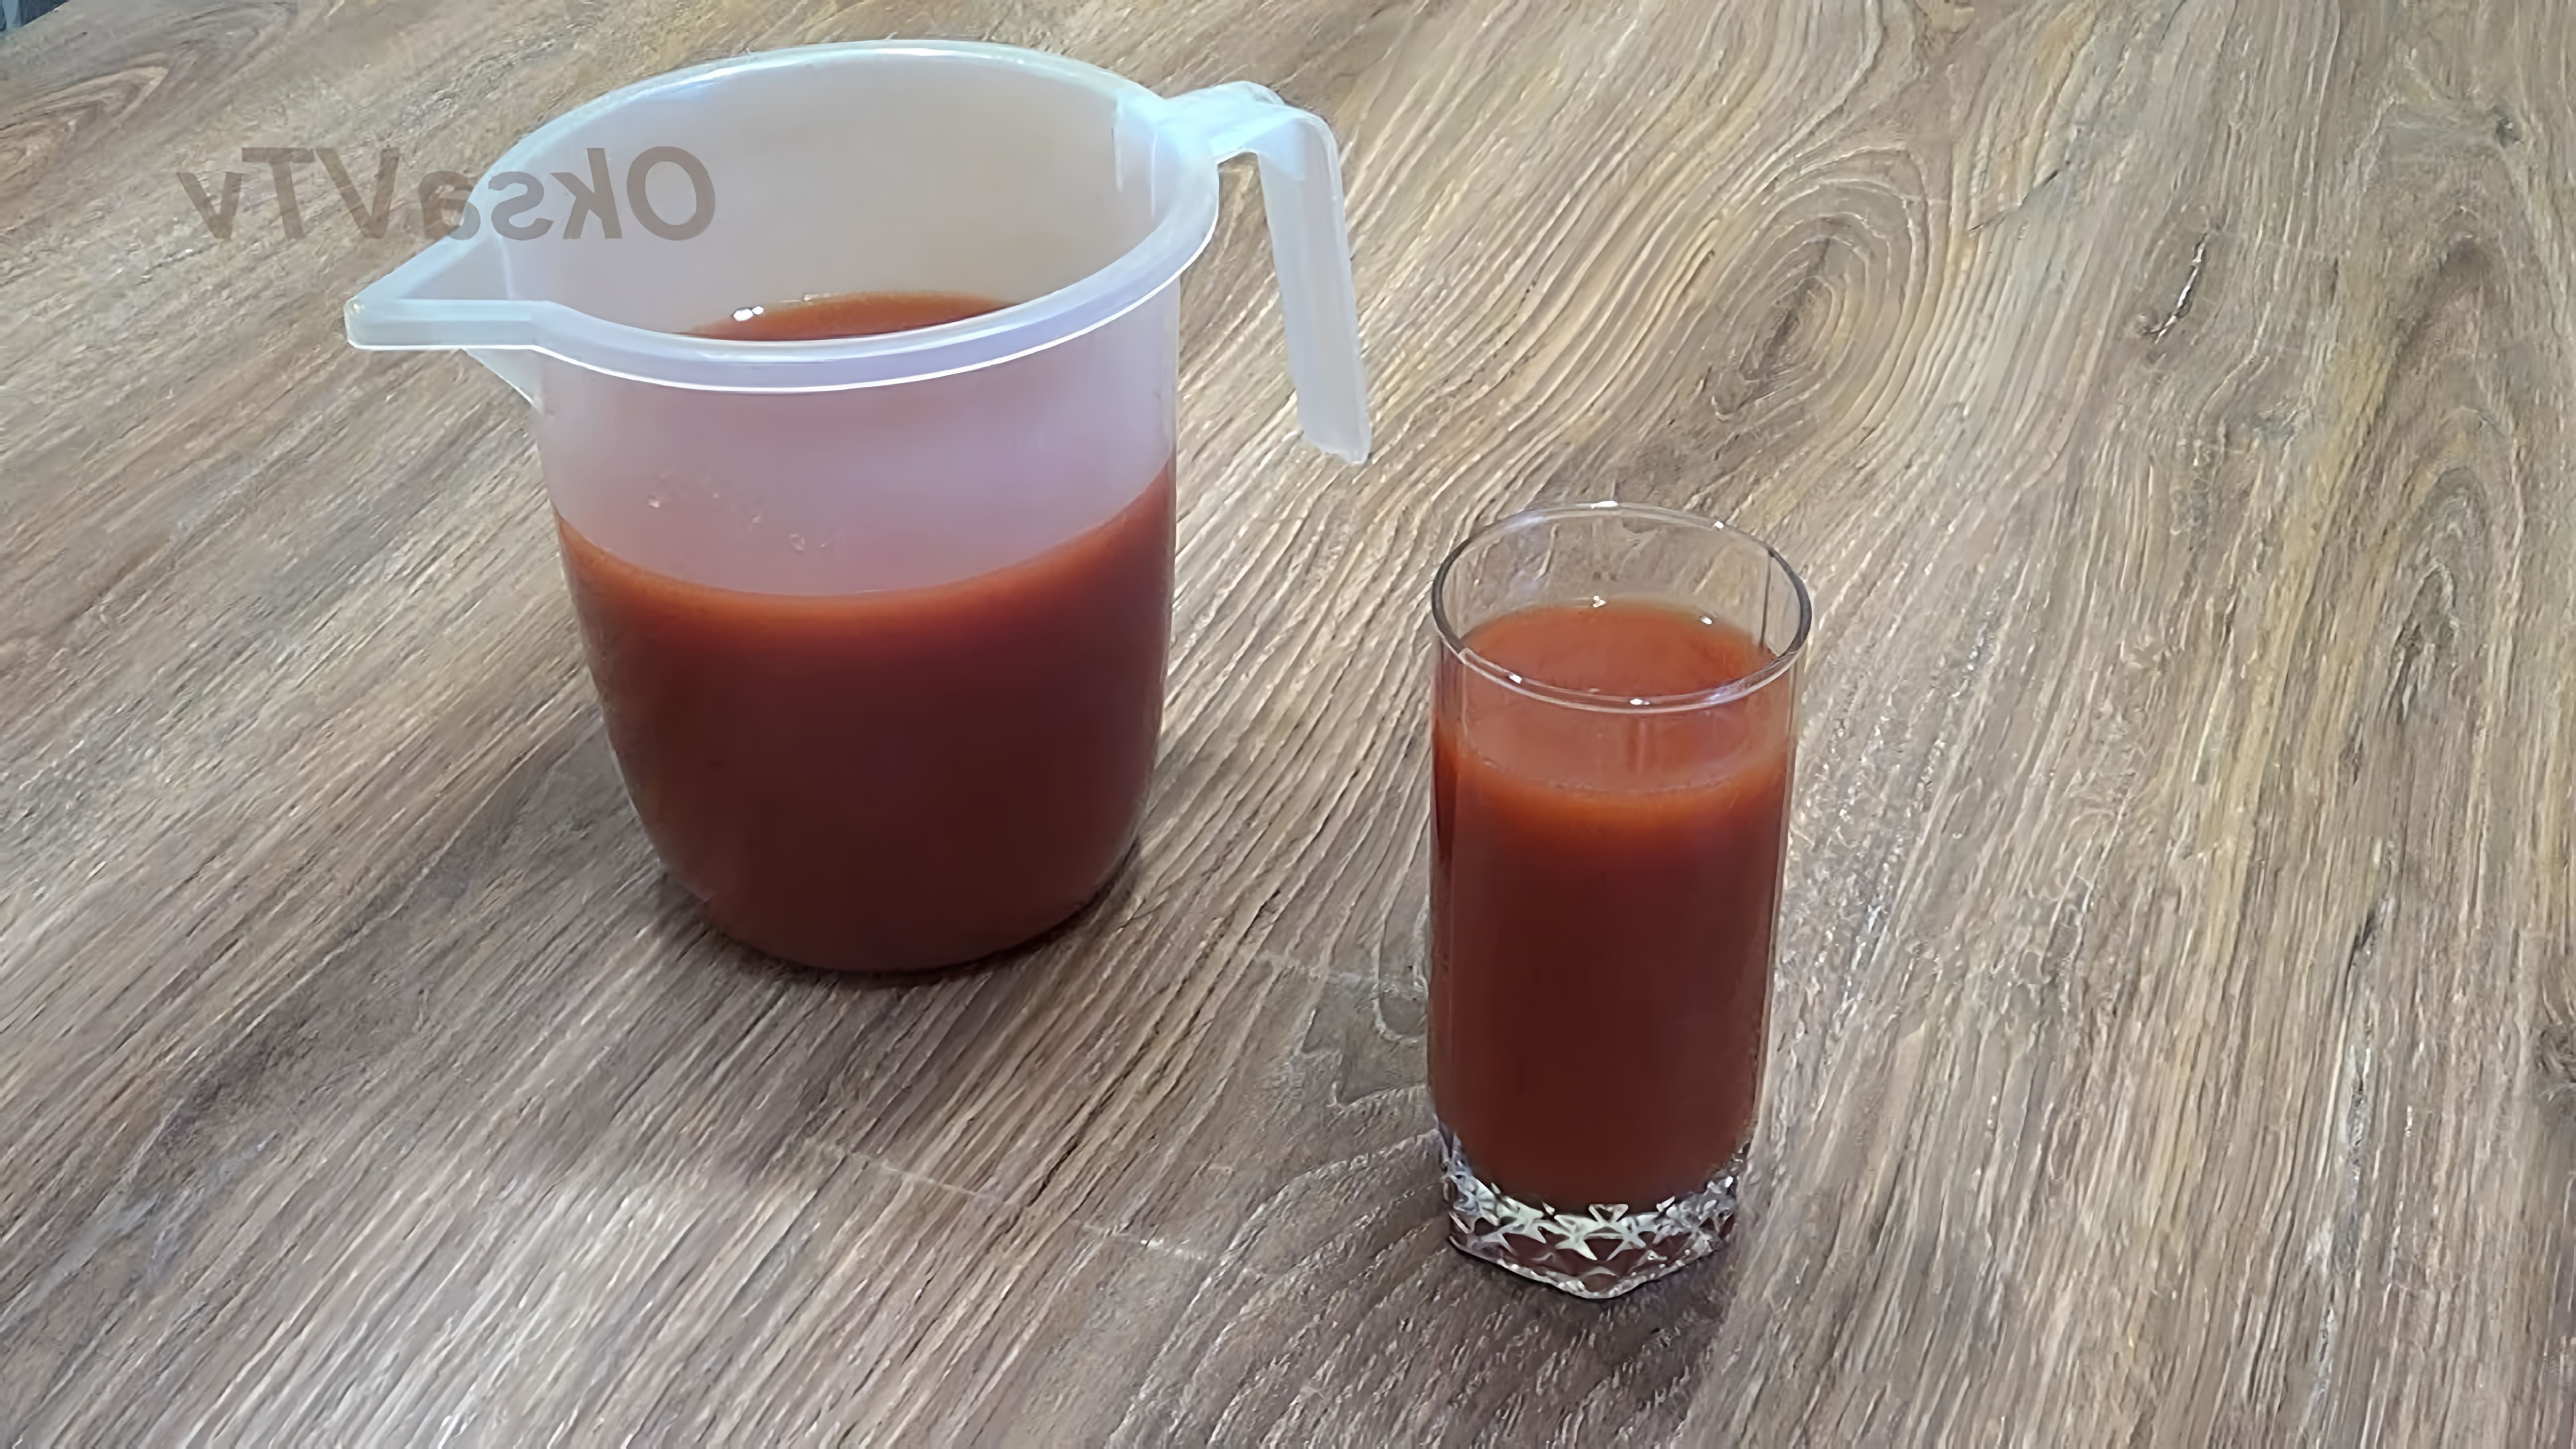 В этом видео Оксана Валерьевна показывает, как приготовить вкусный томатный сок из томатной пасты в домашних условиях